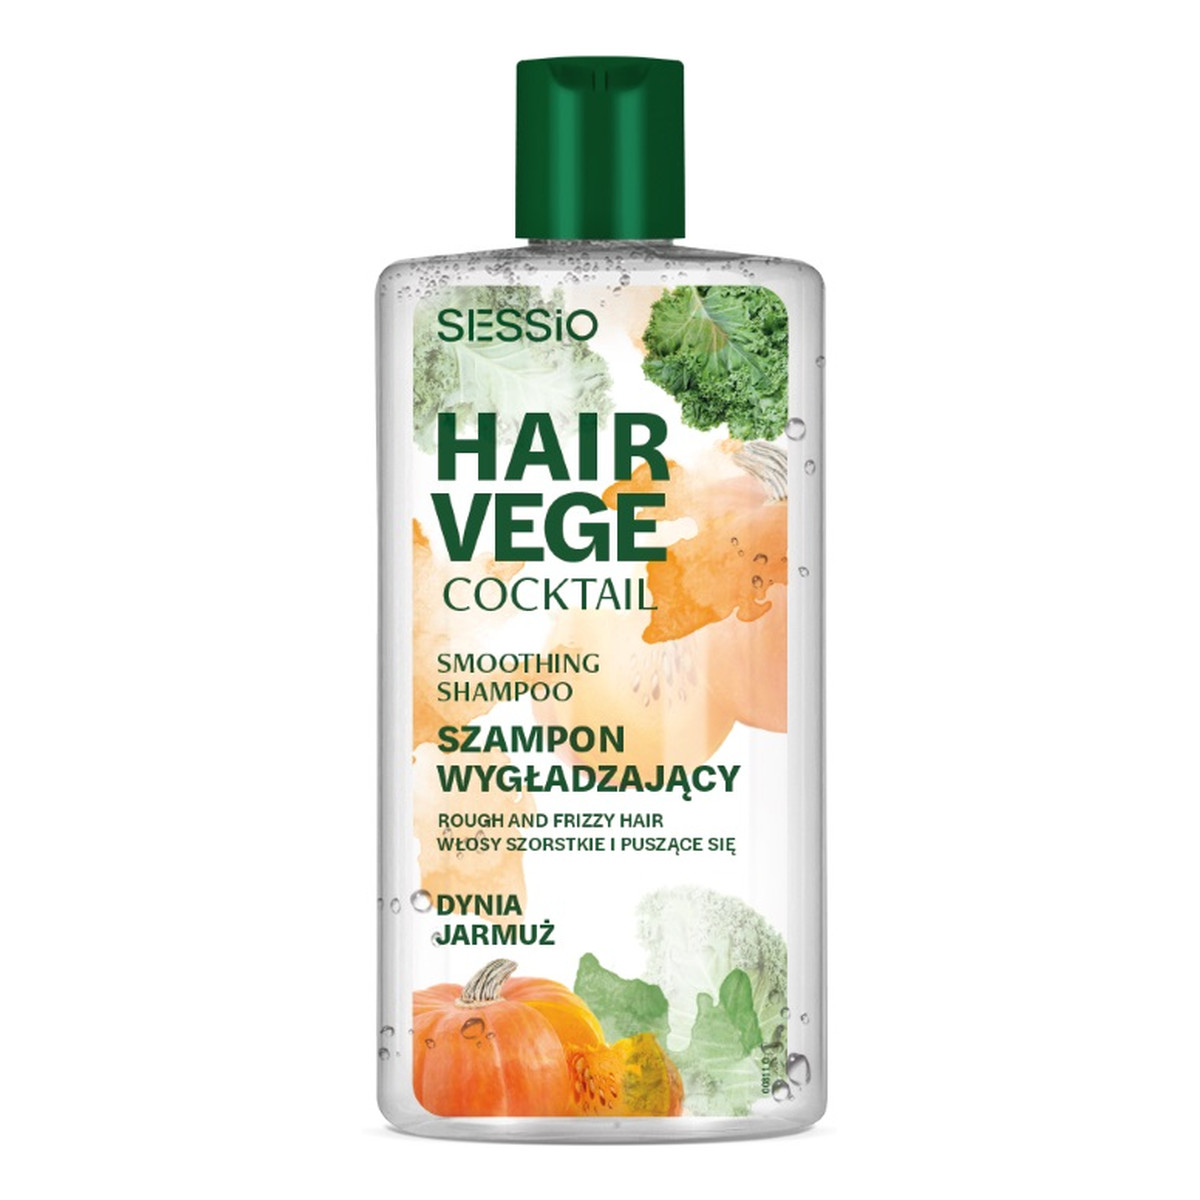 Sessio Hair vege cocktail wygładzający szampon do włosów dynia i jarmuż 300g 300g